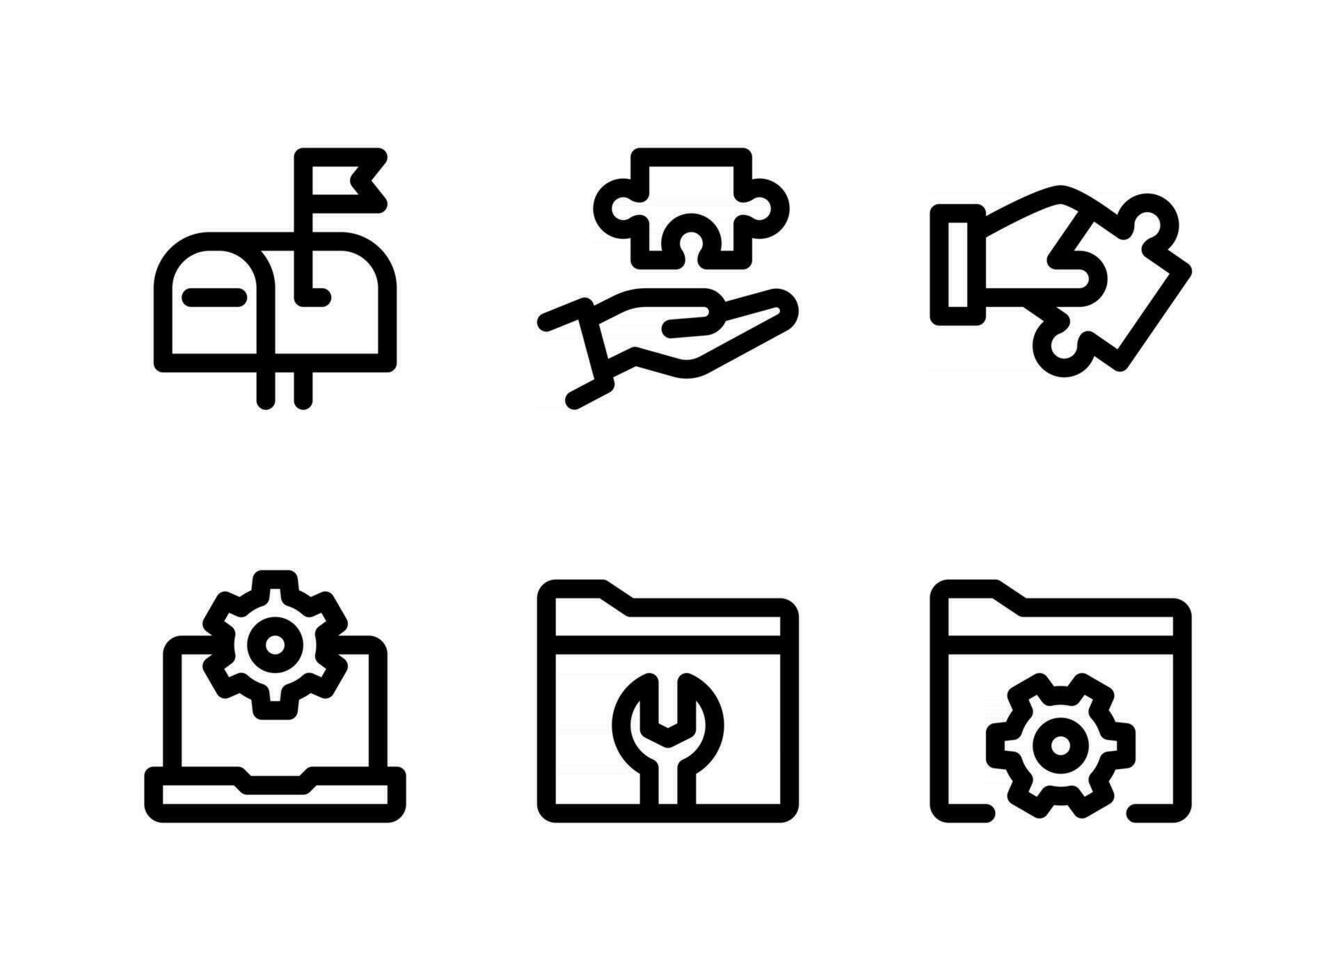 semplice set di icone di linee vettoriali relative alla guida e al supporto. contiene icone come casella di posta, risoluzione dei problemi, impostazioni del computer e altro.